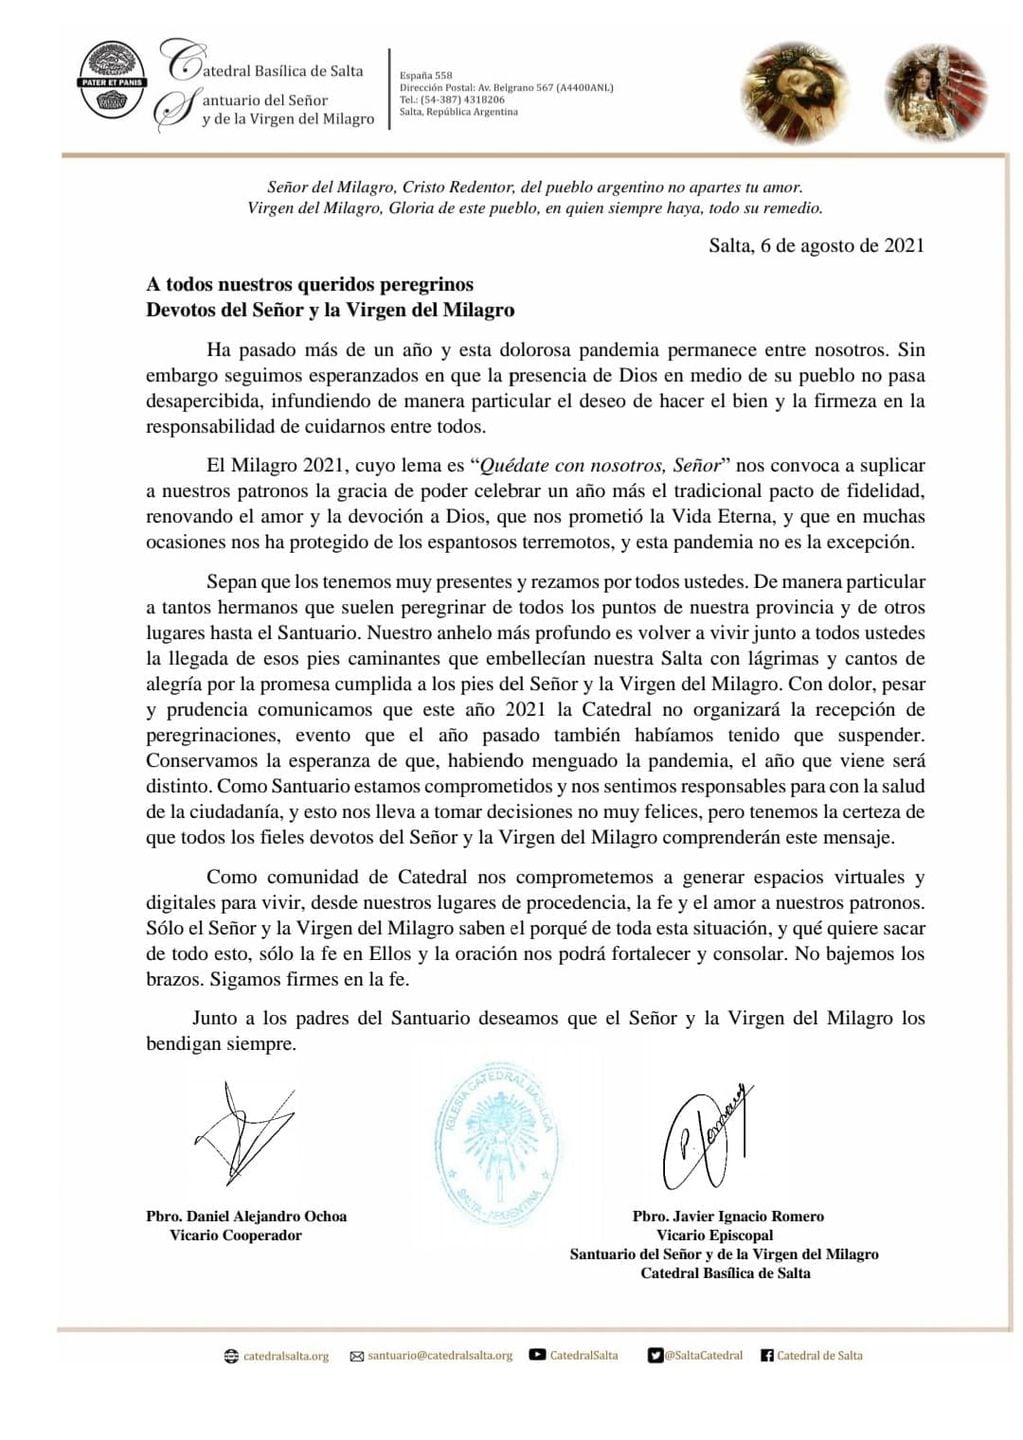 El comunicado oficial compartido en las redes de la Catedral de Salta.